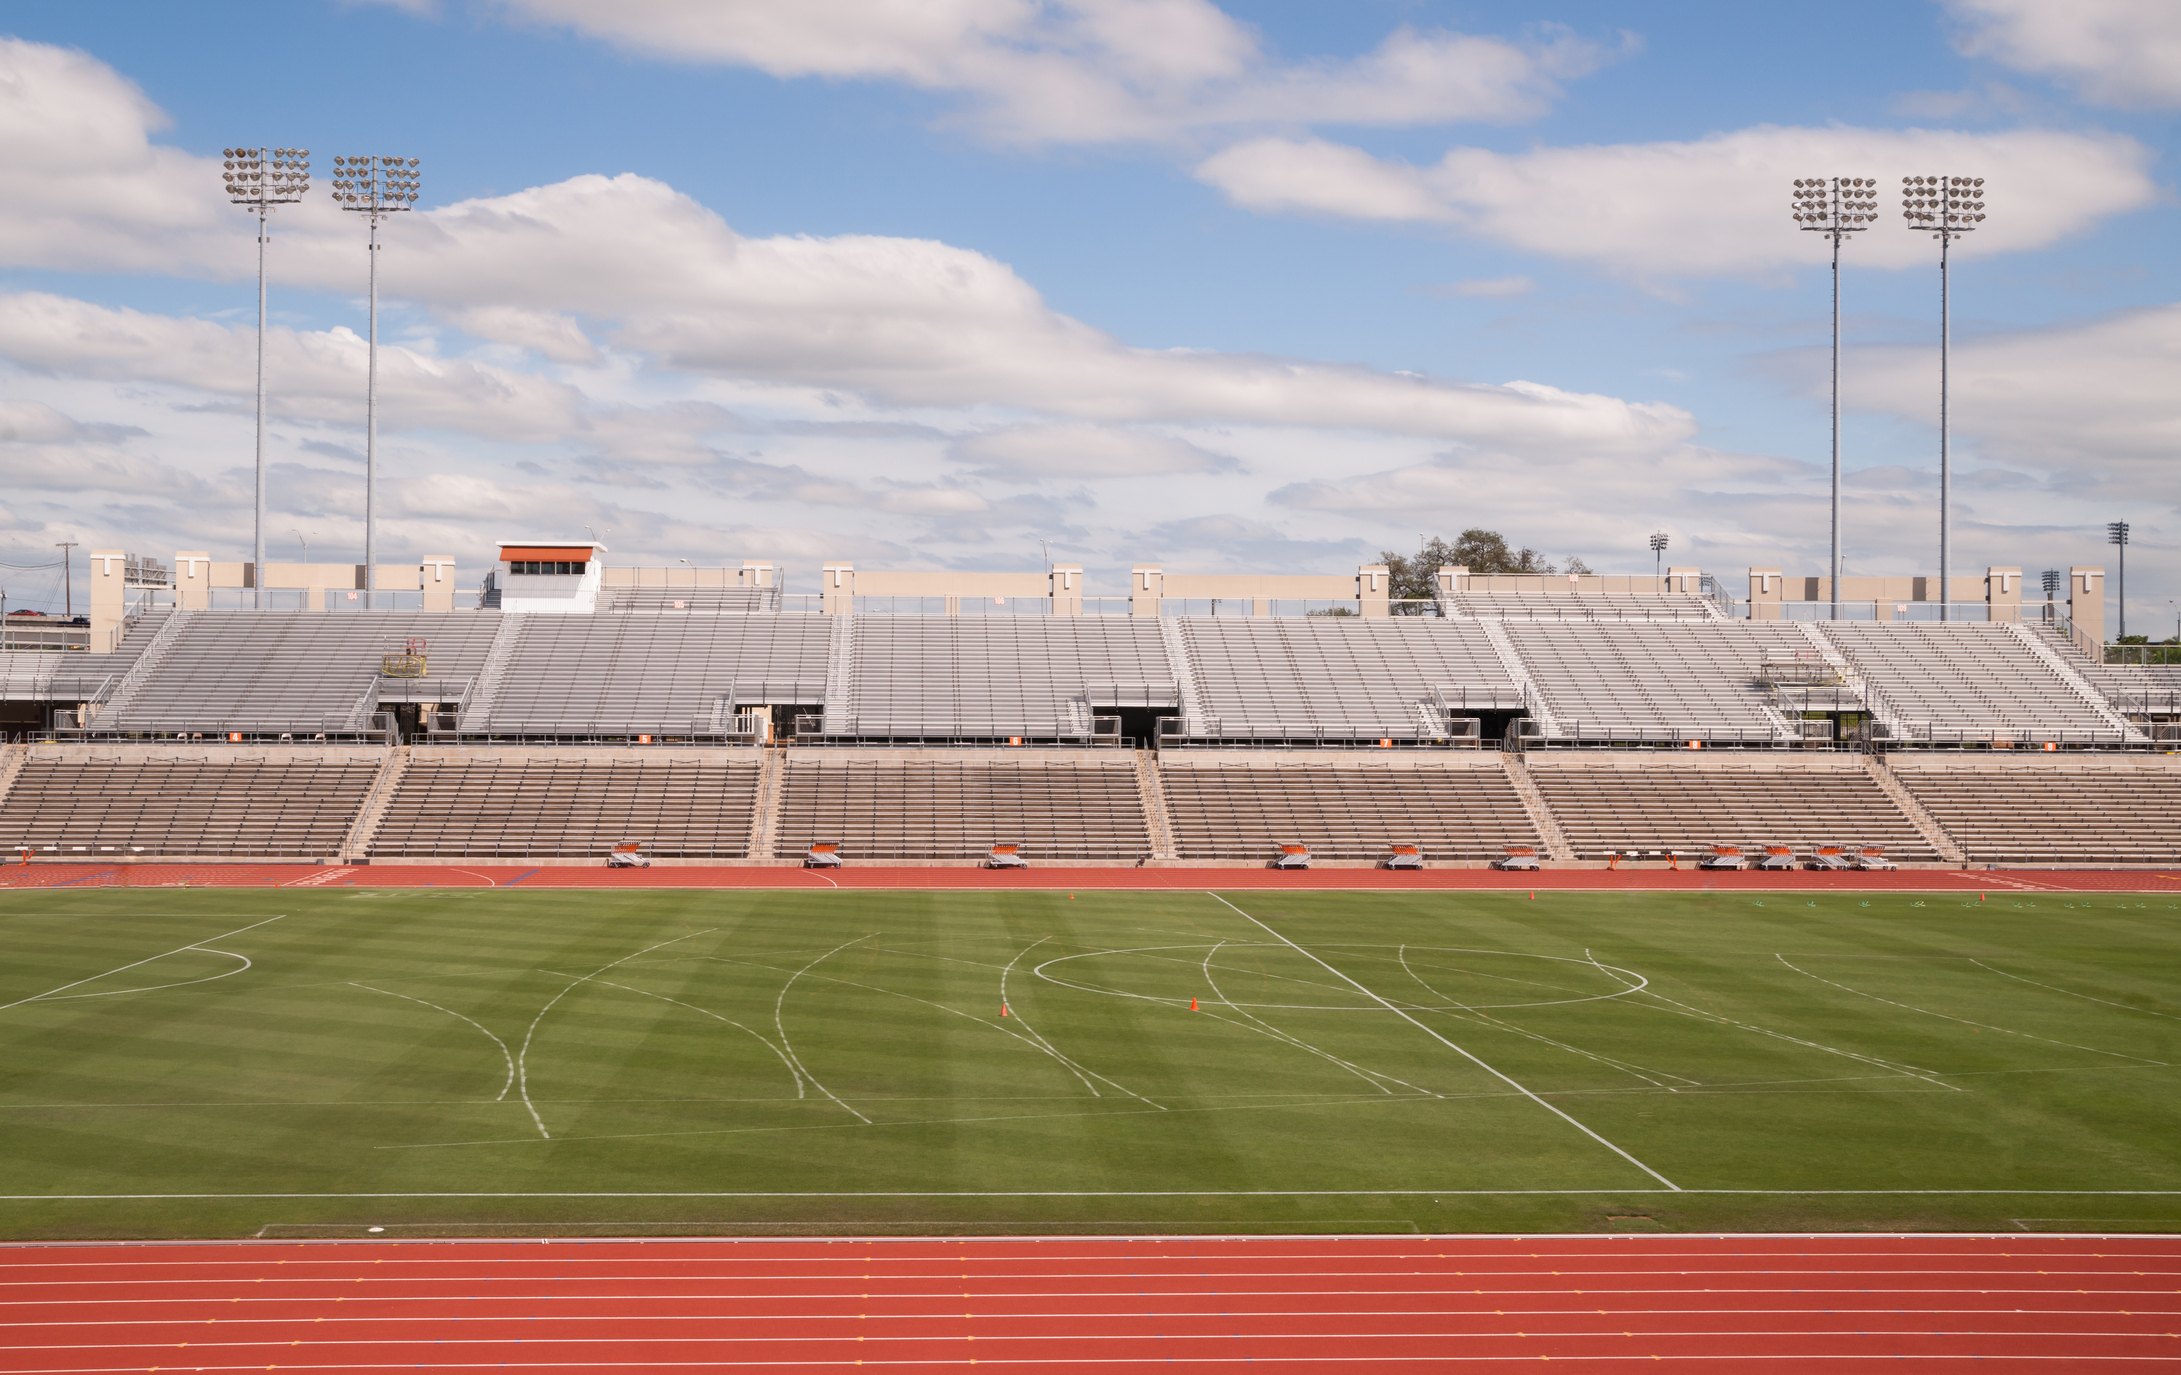 Stadio di pista a livello universitario con nuvole gonfie, cielo blu